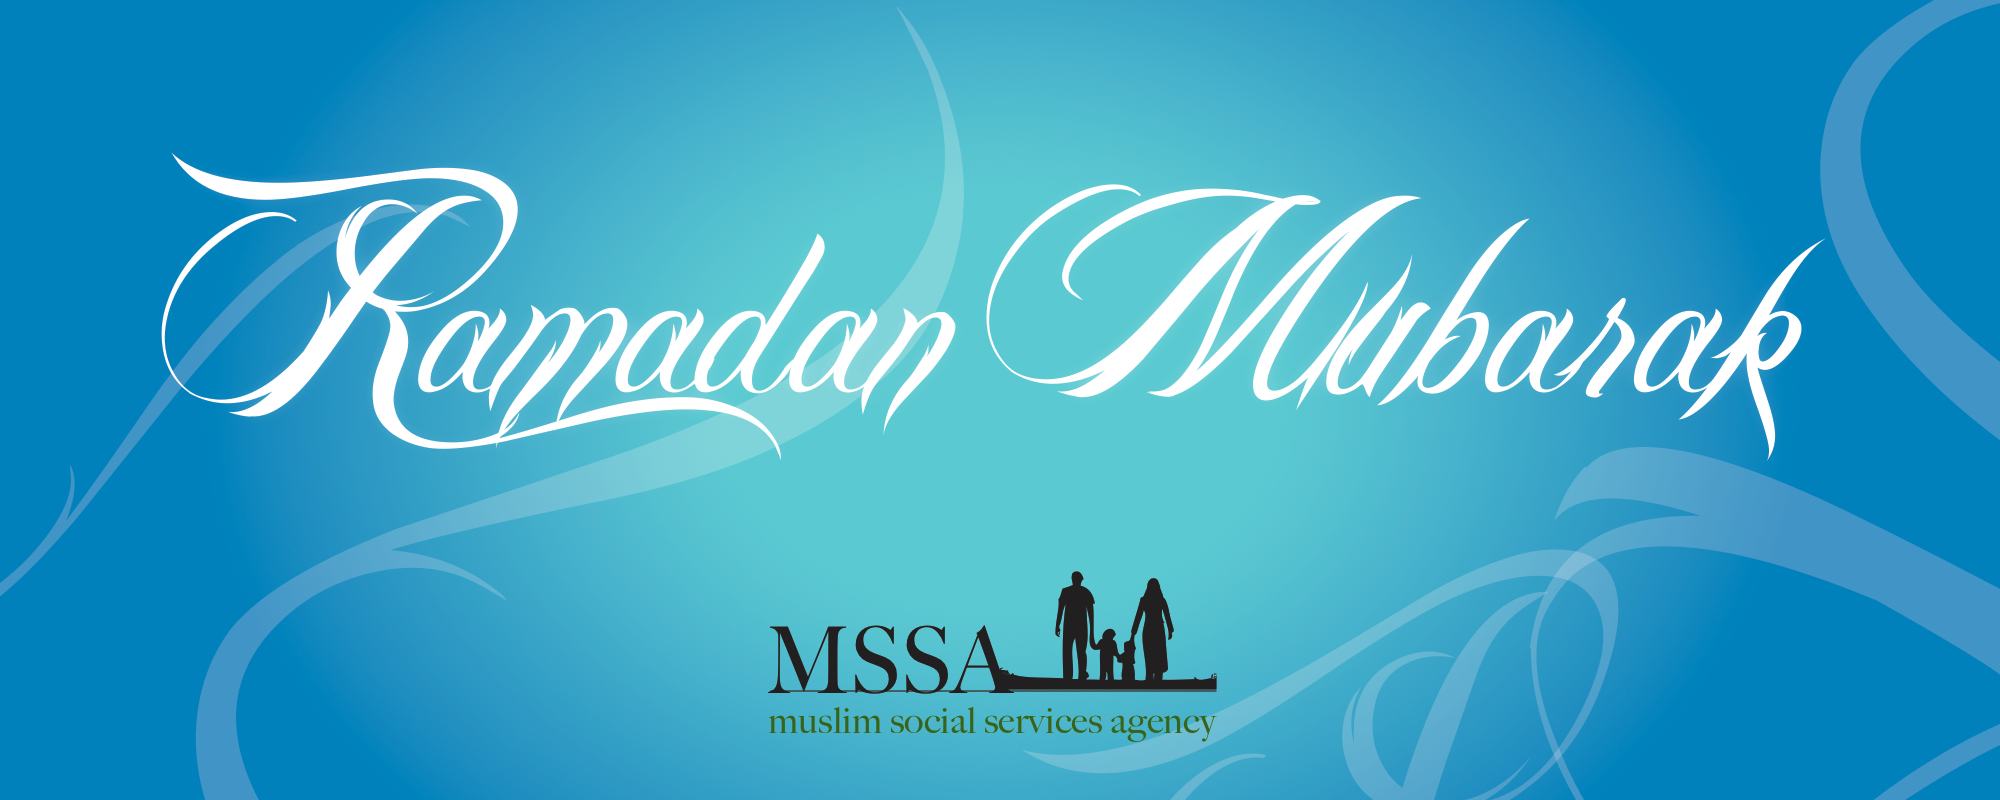 Mubarak Muslim Social Services Agency Ramadan